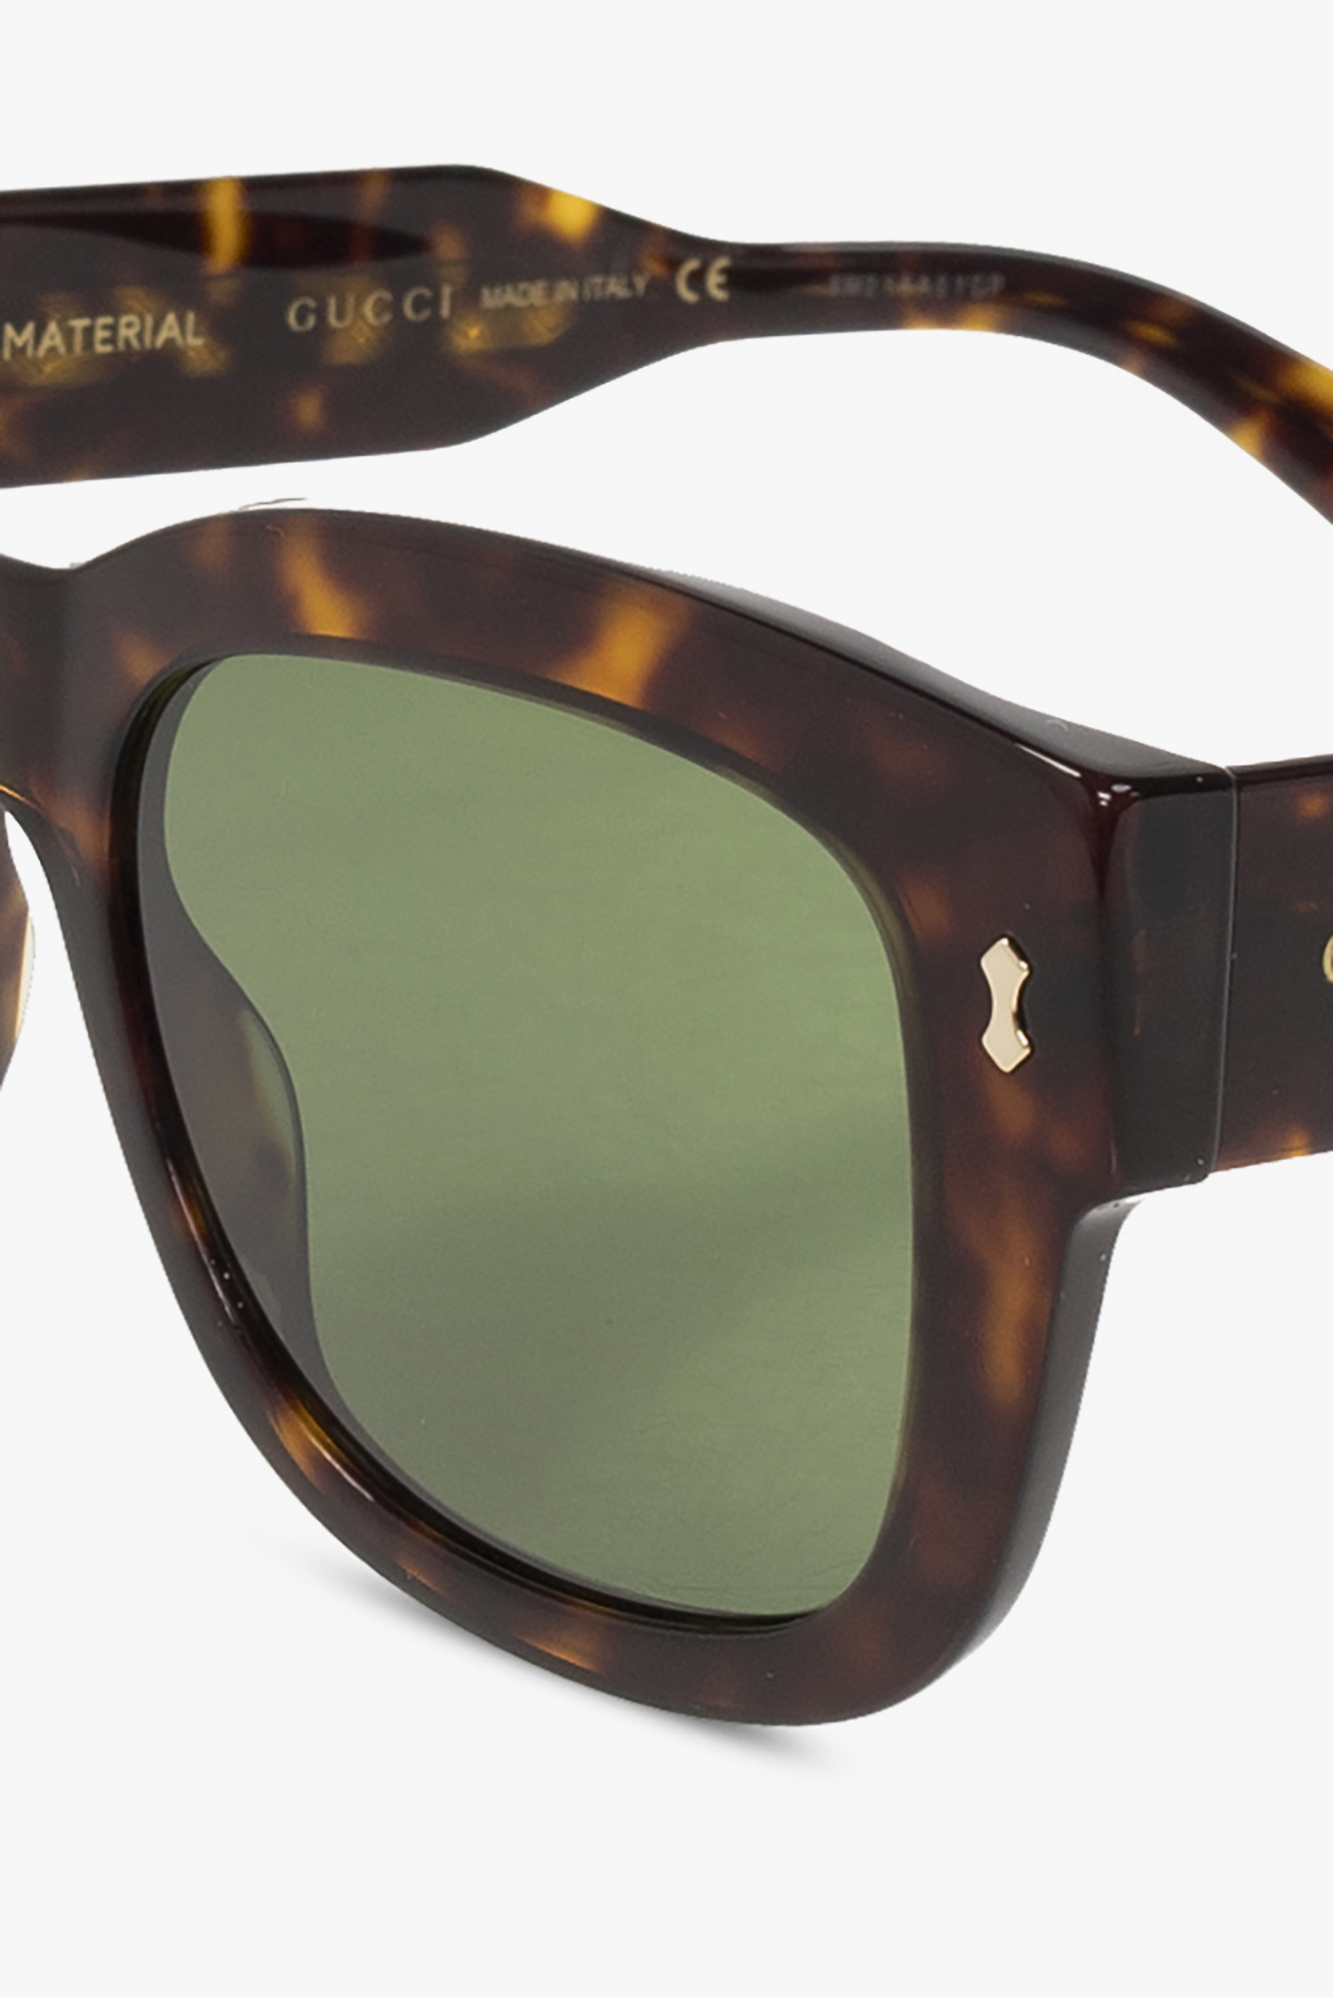 AJ Morgan c me white frame sunglasses - Maldives - Brown Sunglasses Gucci